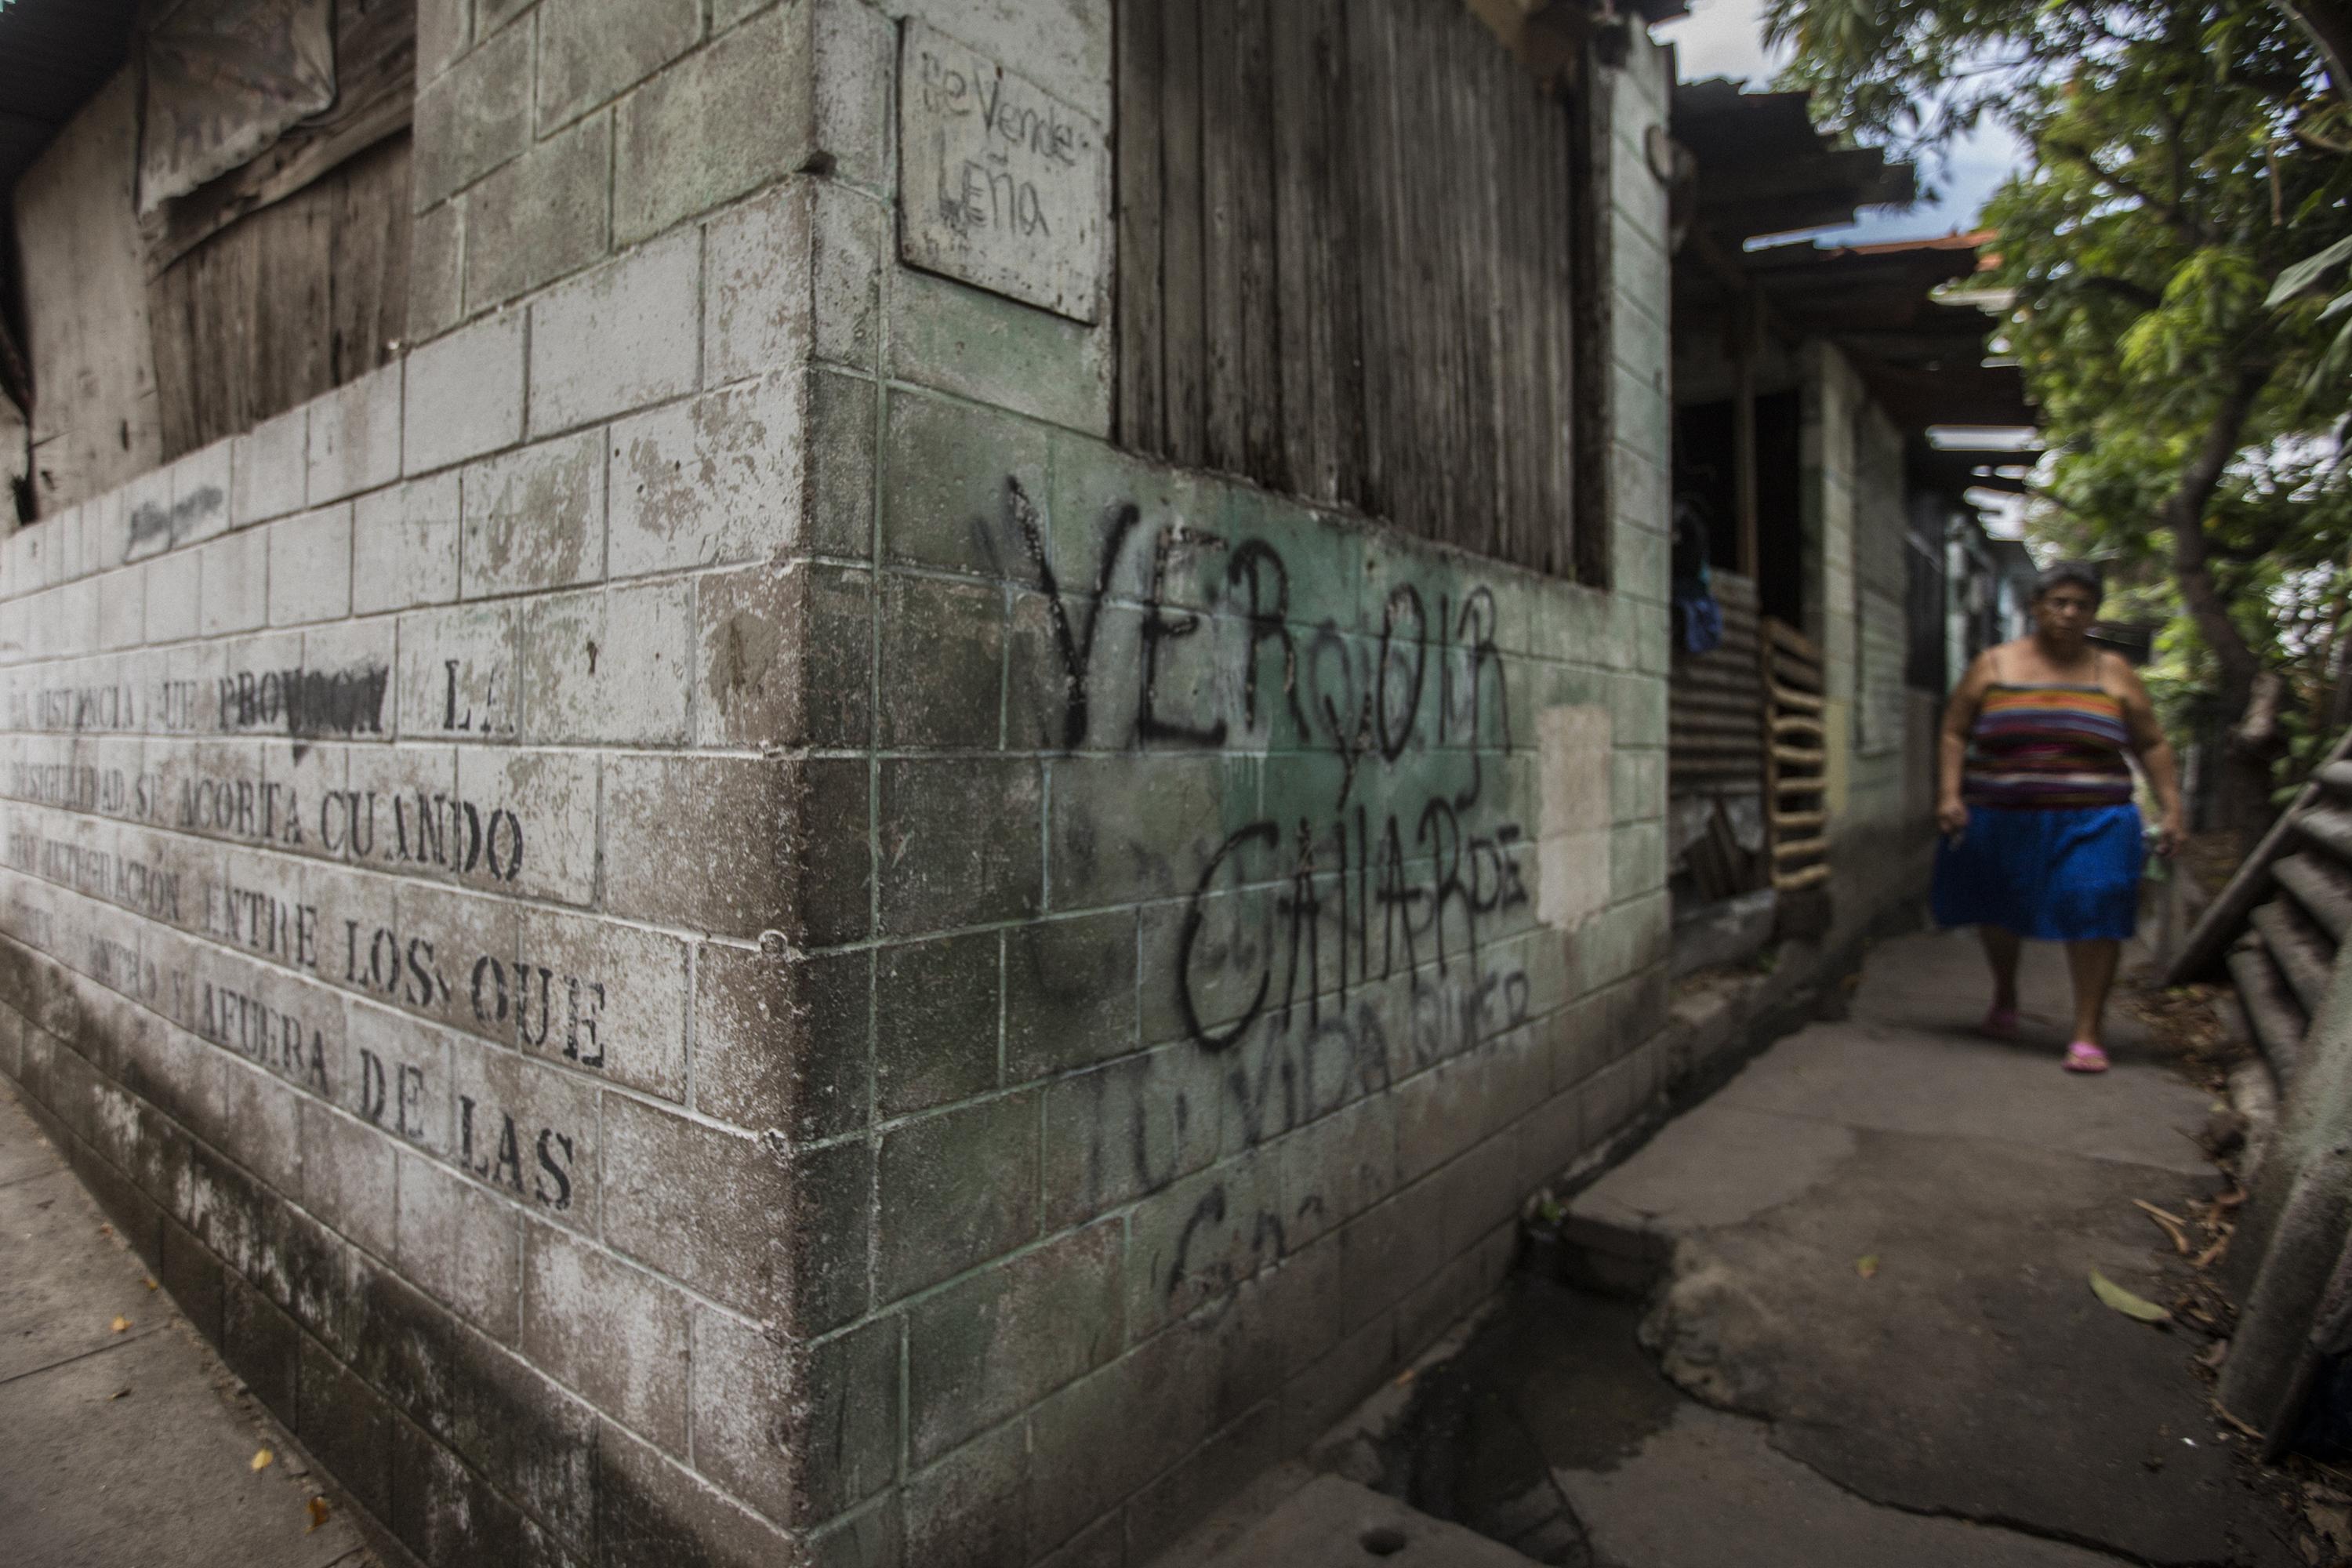 Al interiror del Reparto La Campanera quedan algunos registros del control que ejercía el Barrio 18. Ahora son callejones solitarios custodiados desde hace un año por un grupo de militares. Foto de El Faro: Víctor Peña.